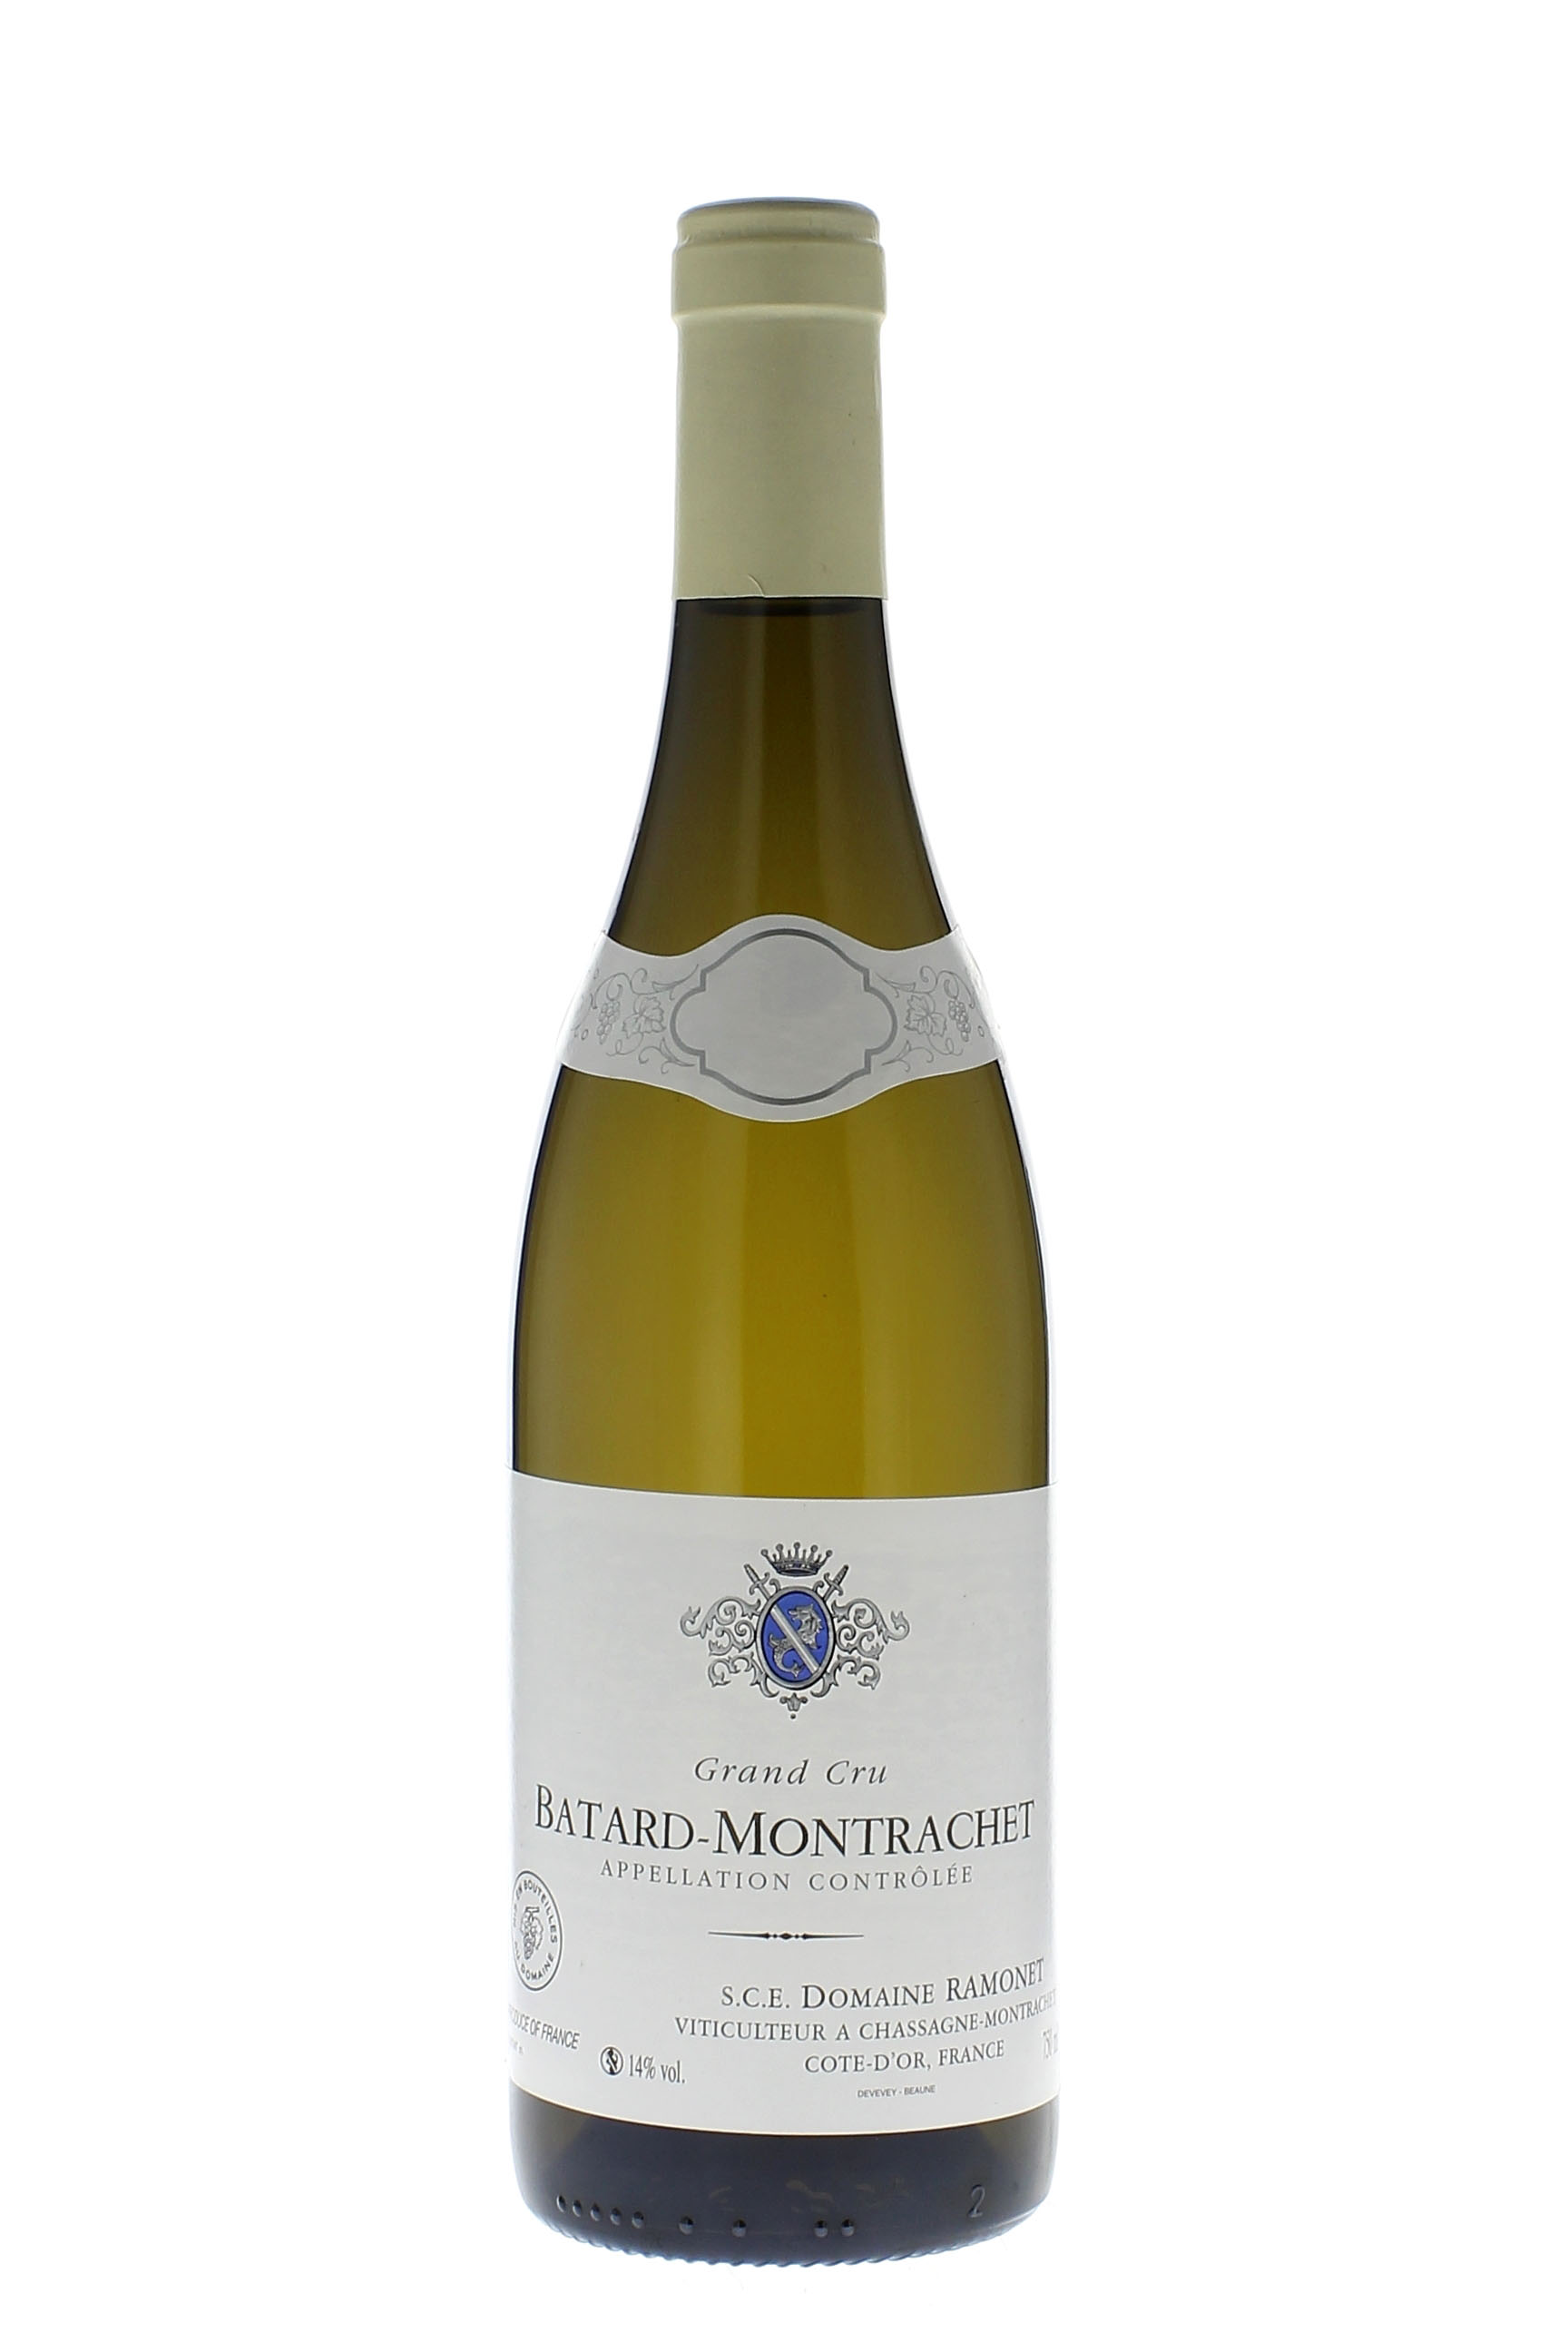 Batard montrachet 2003 Domaine RAMONET, Bourgogne blanc